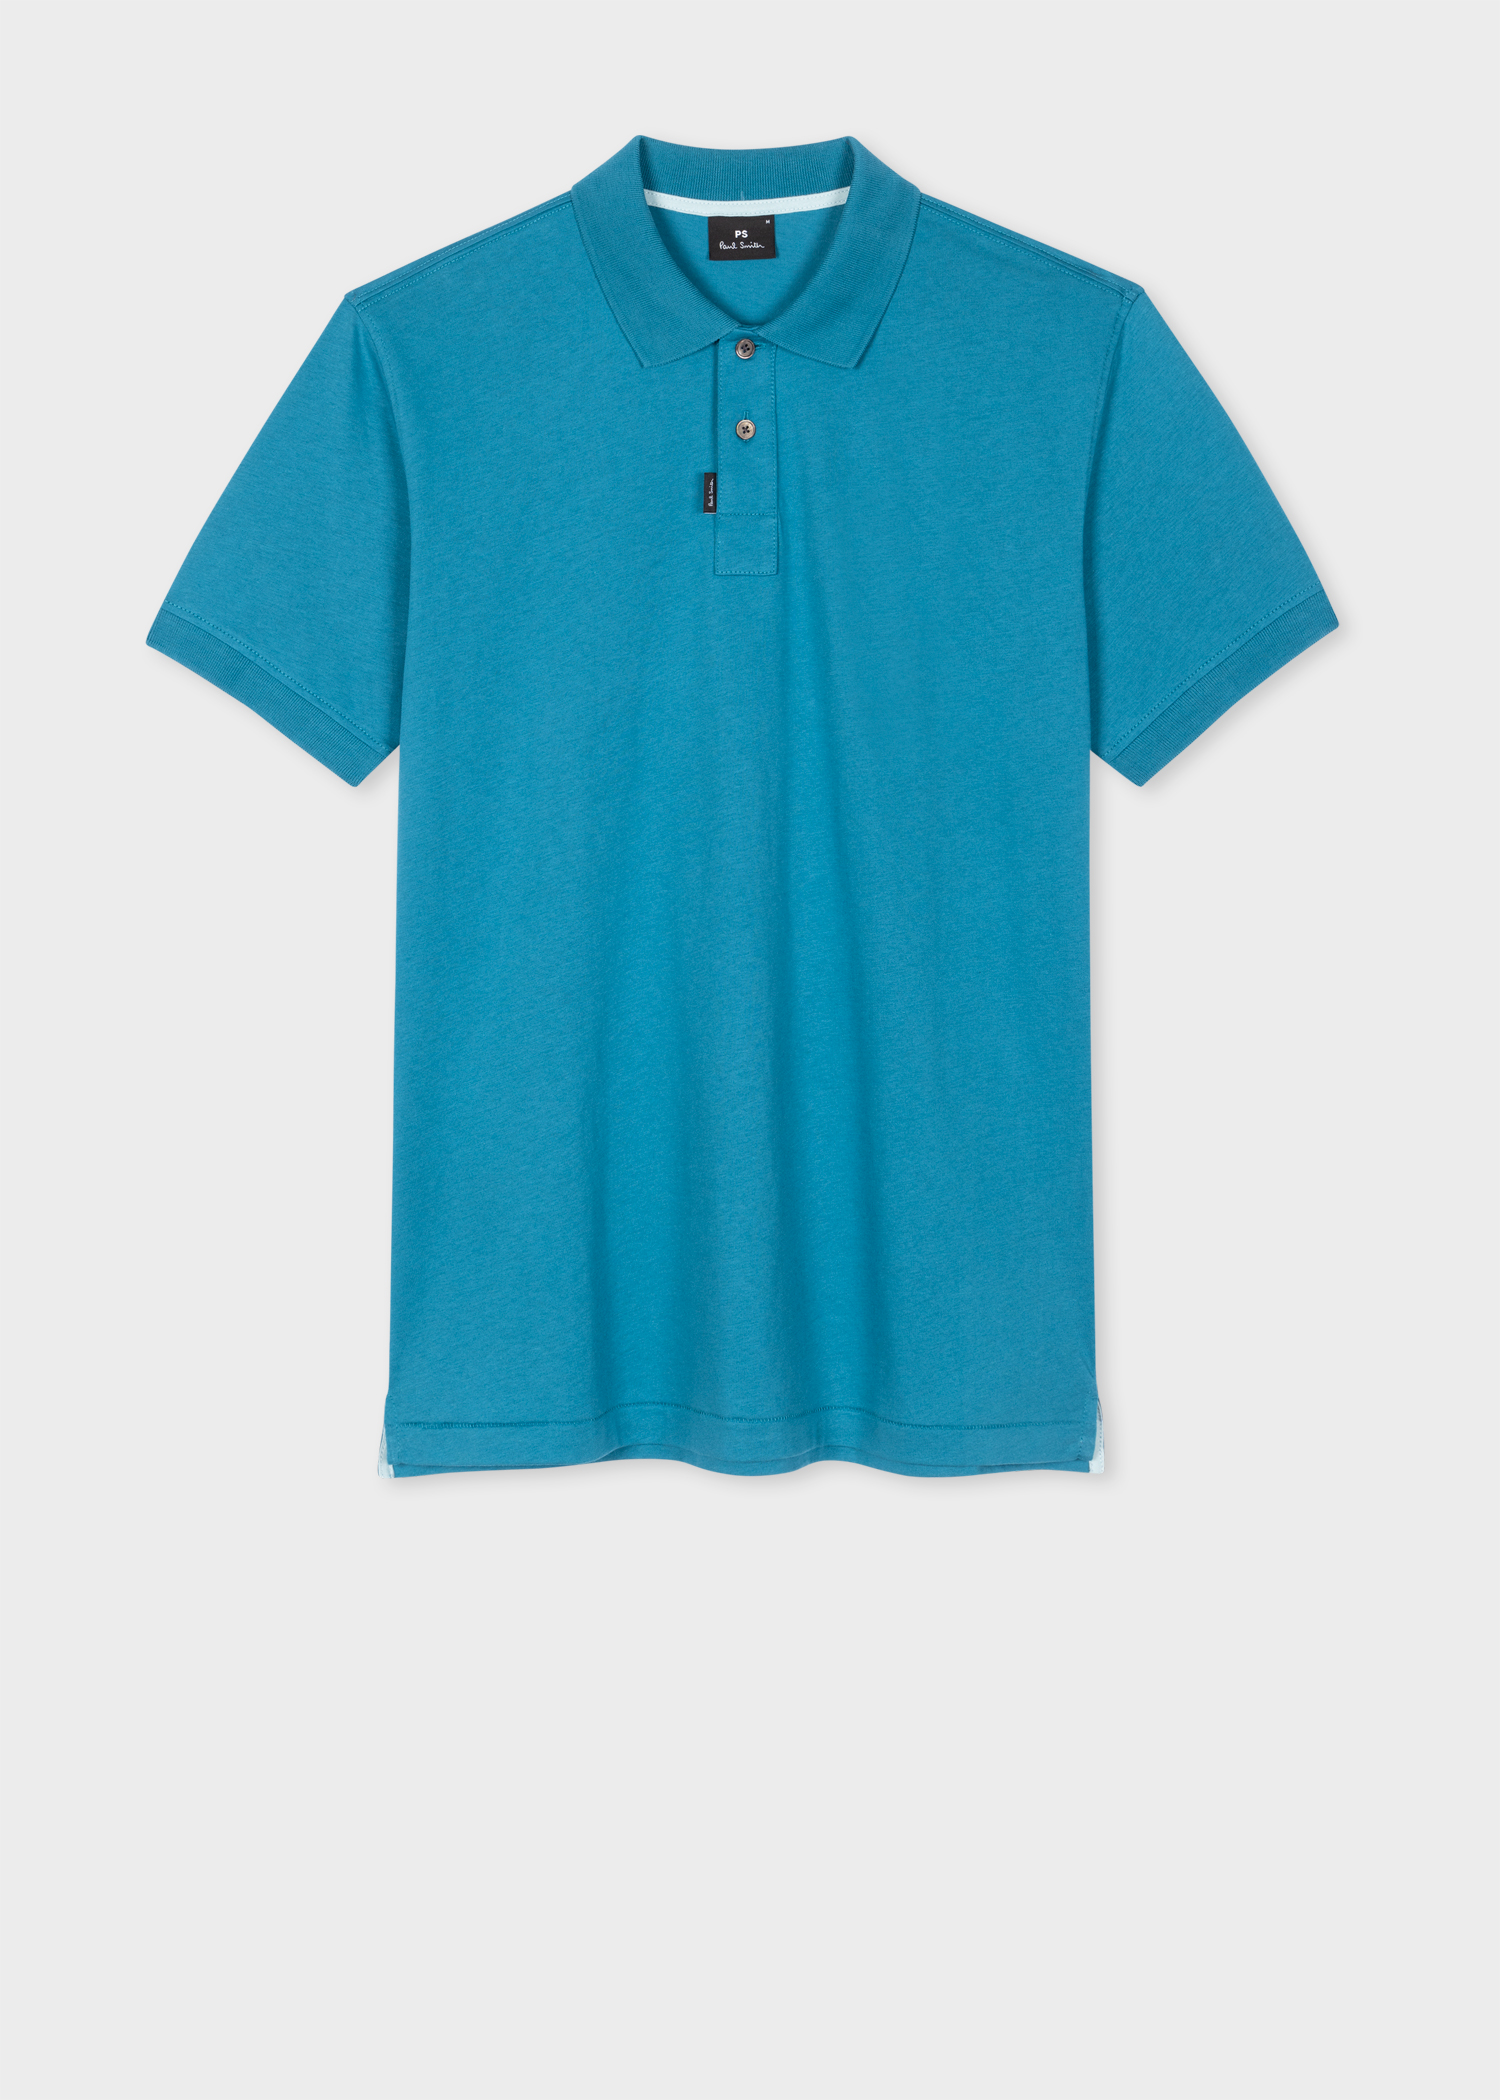 Men's Teal Organic Cotton Polo Shirt